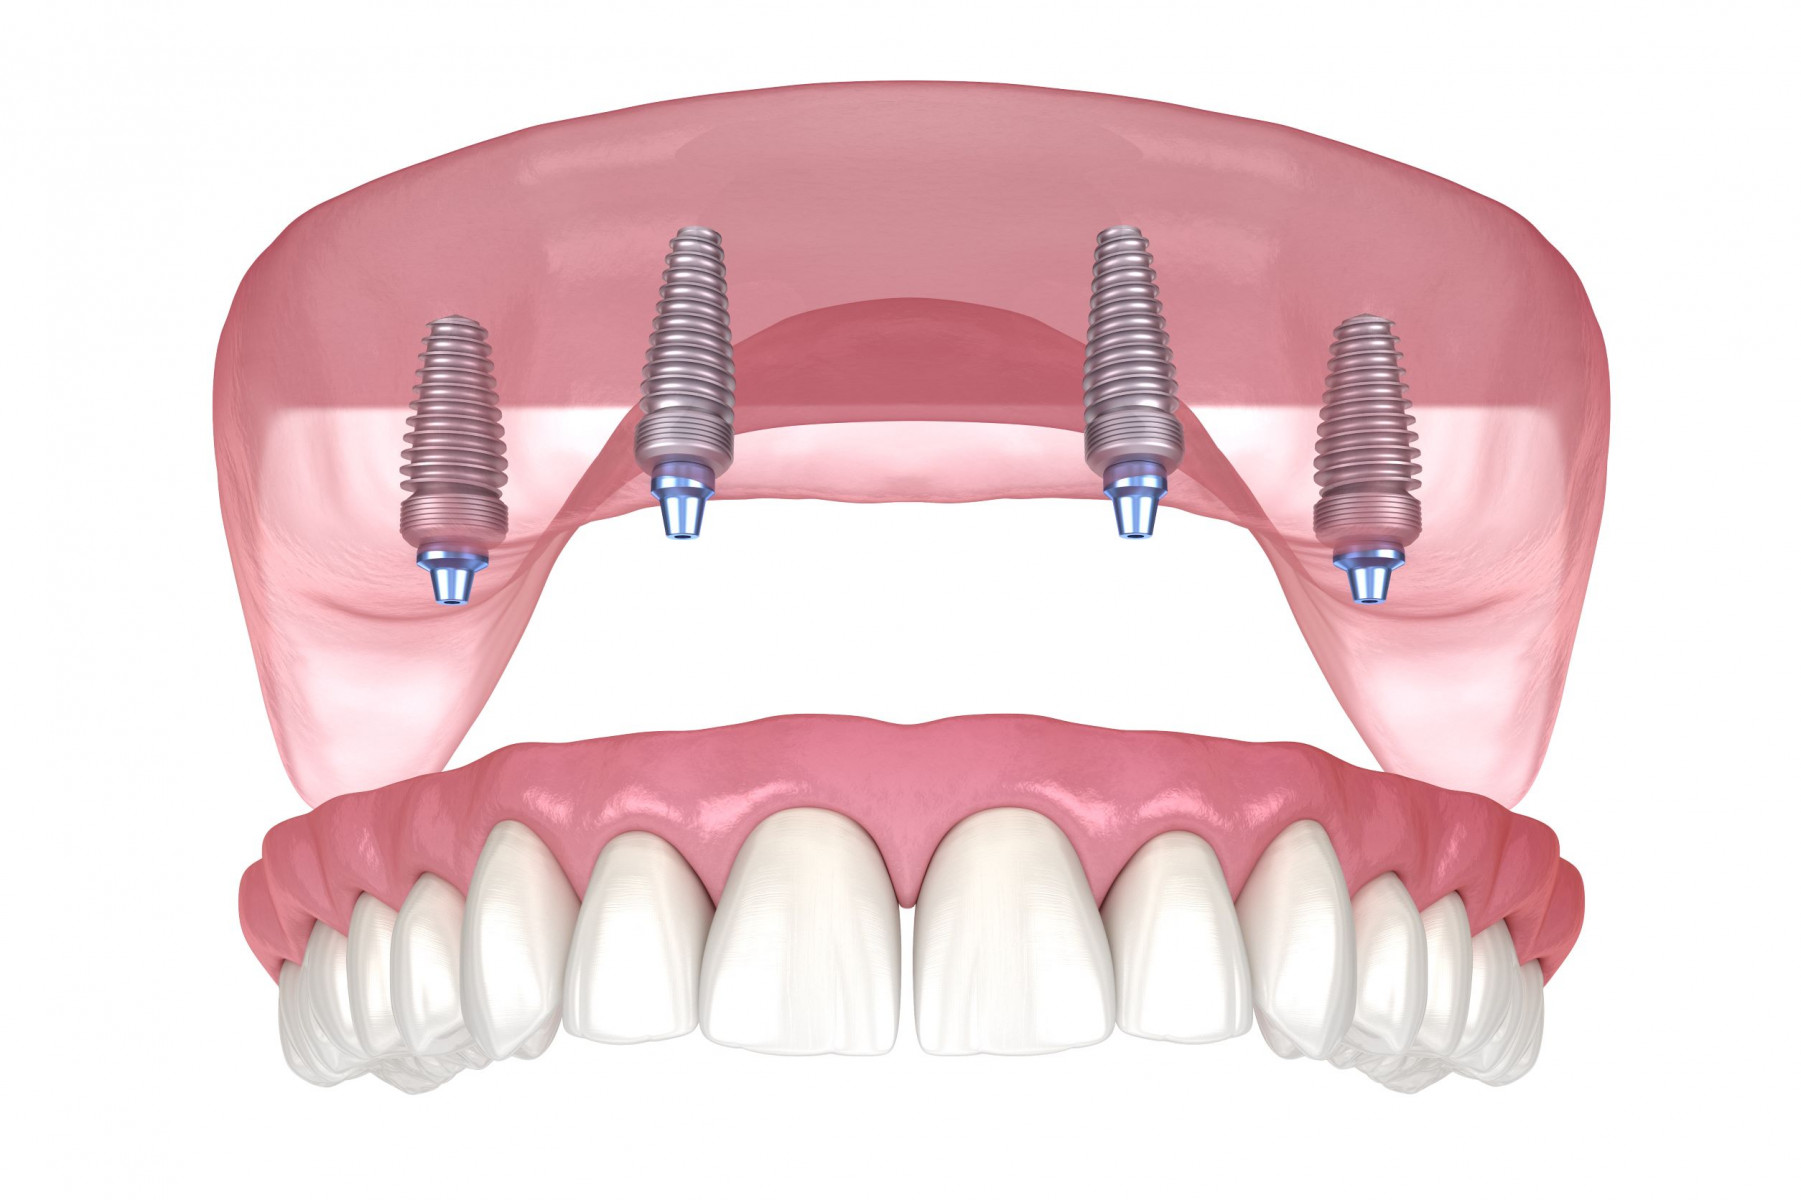 Sherman Oaks Dental Implant Specialists